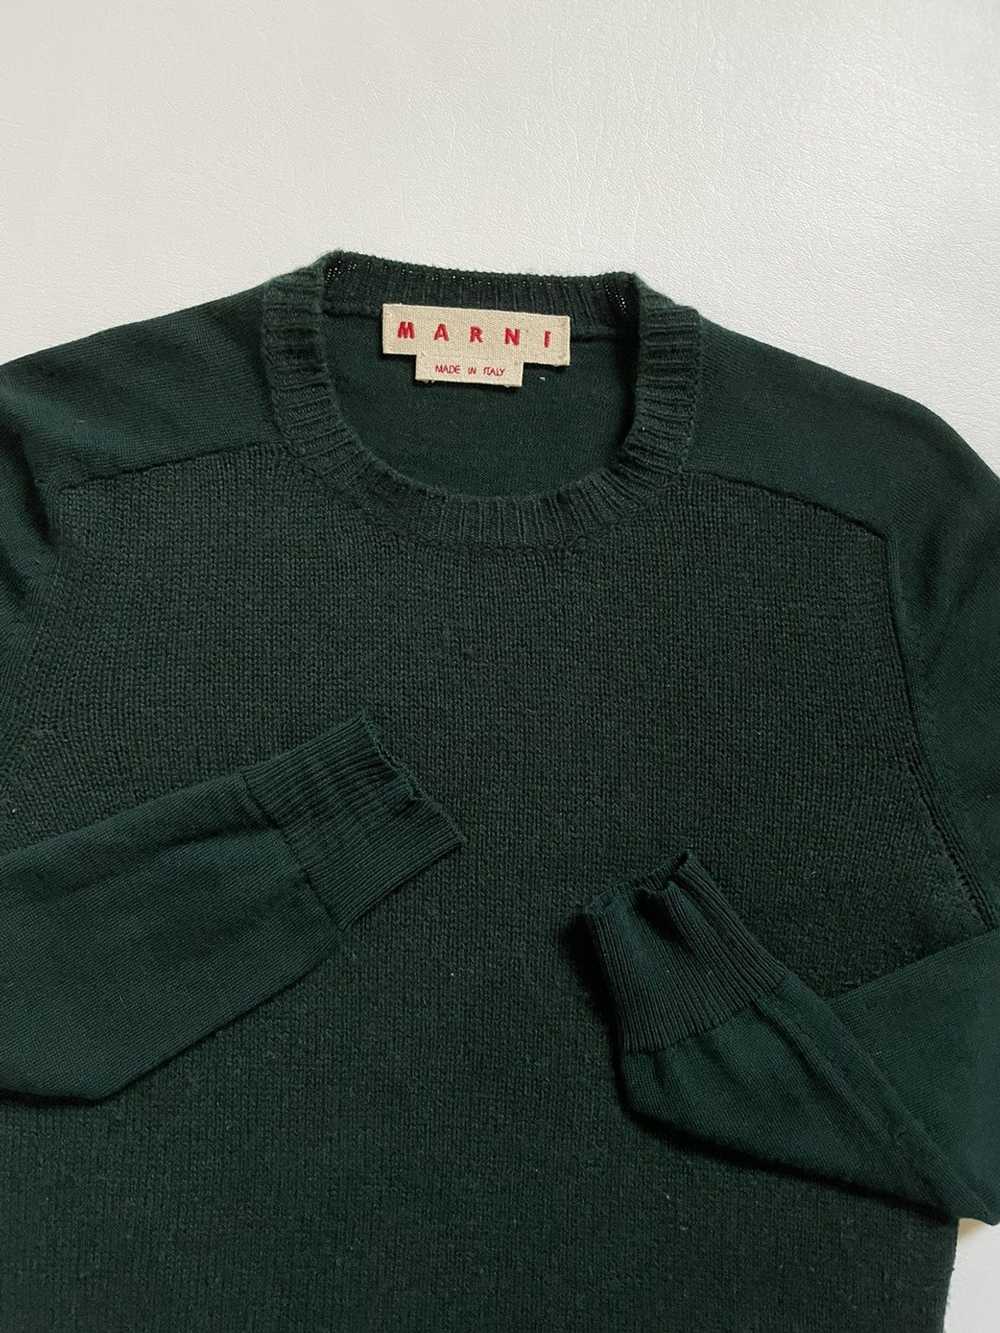 Designer × Marni × Streetwear Marni sweater - image 1